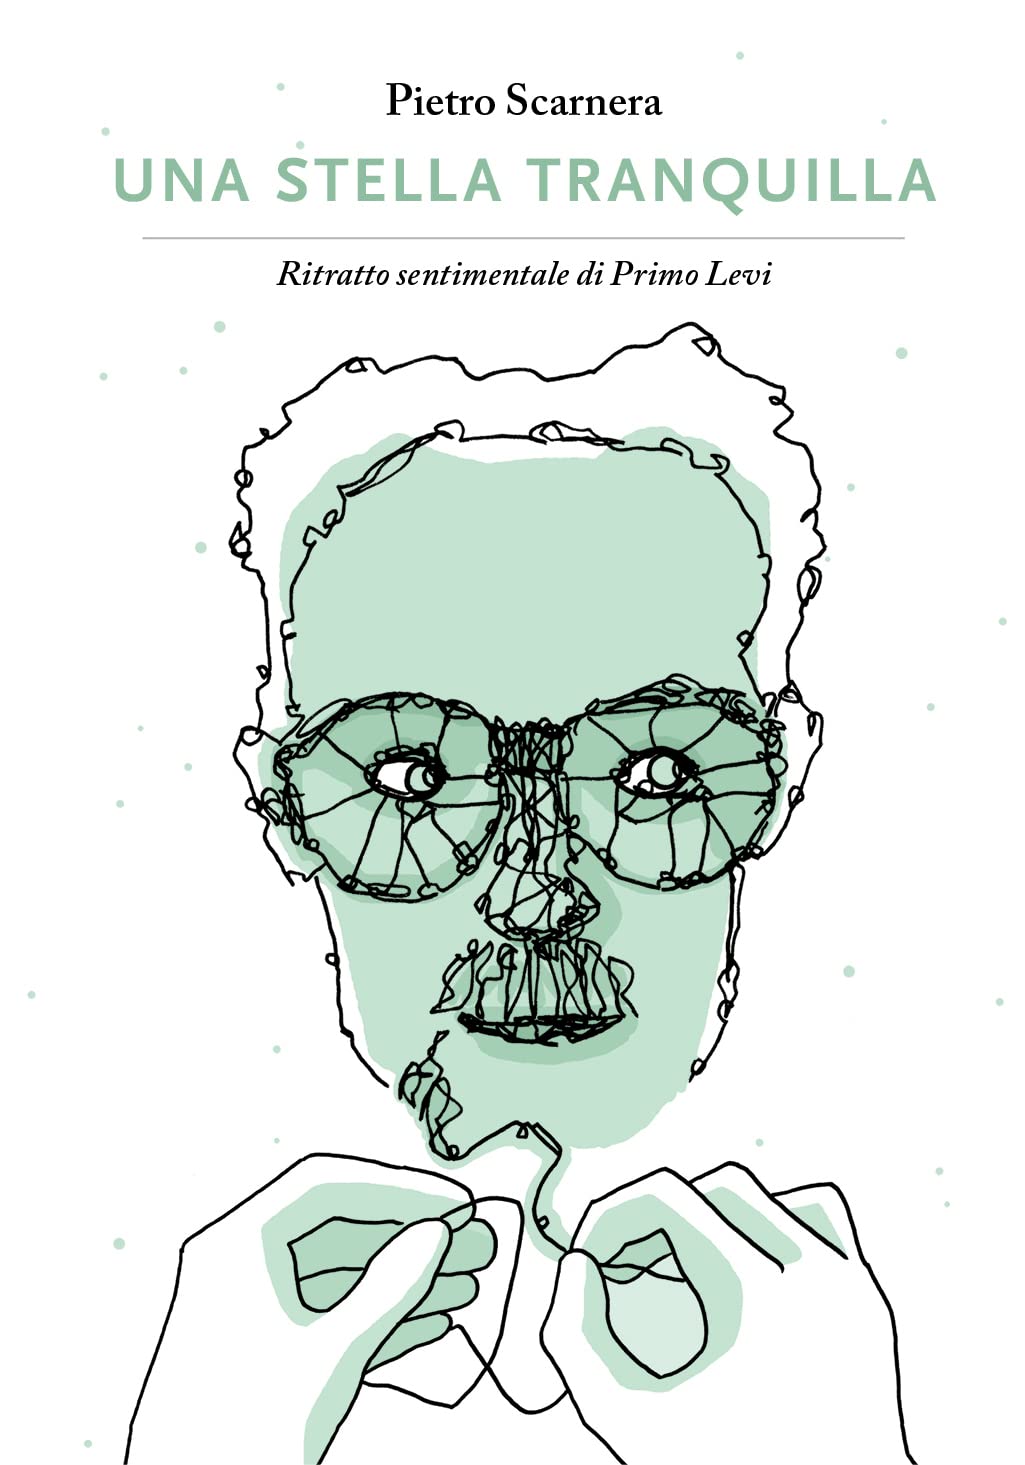 La Fondazione Fossoli presenta il graphic novel dedicato alla vita di Primo Levi